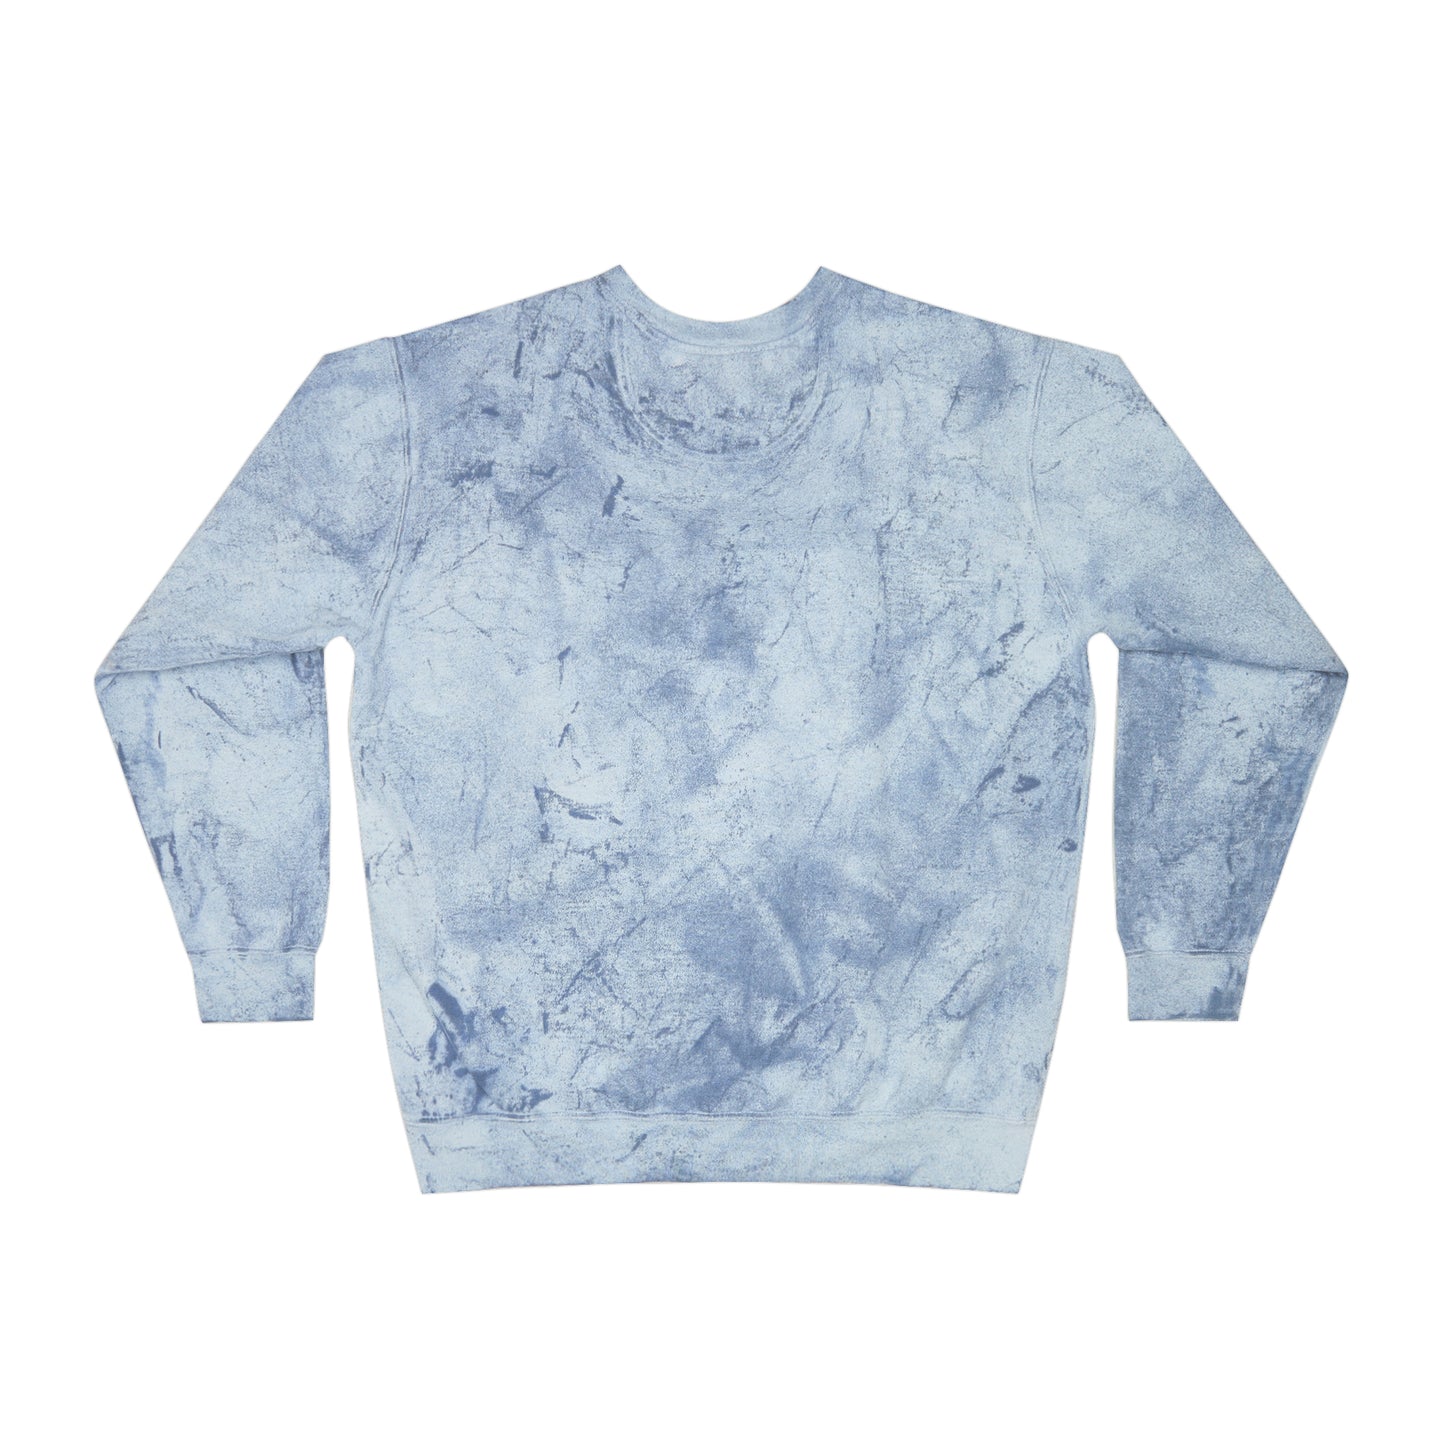 Unisex Comfort Colors Color Blast Crewneck Sweatshirt | Sea of Treachery Sigil